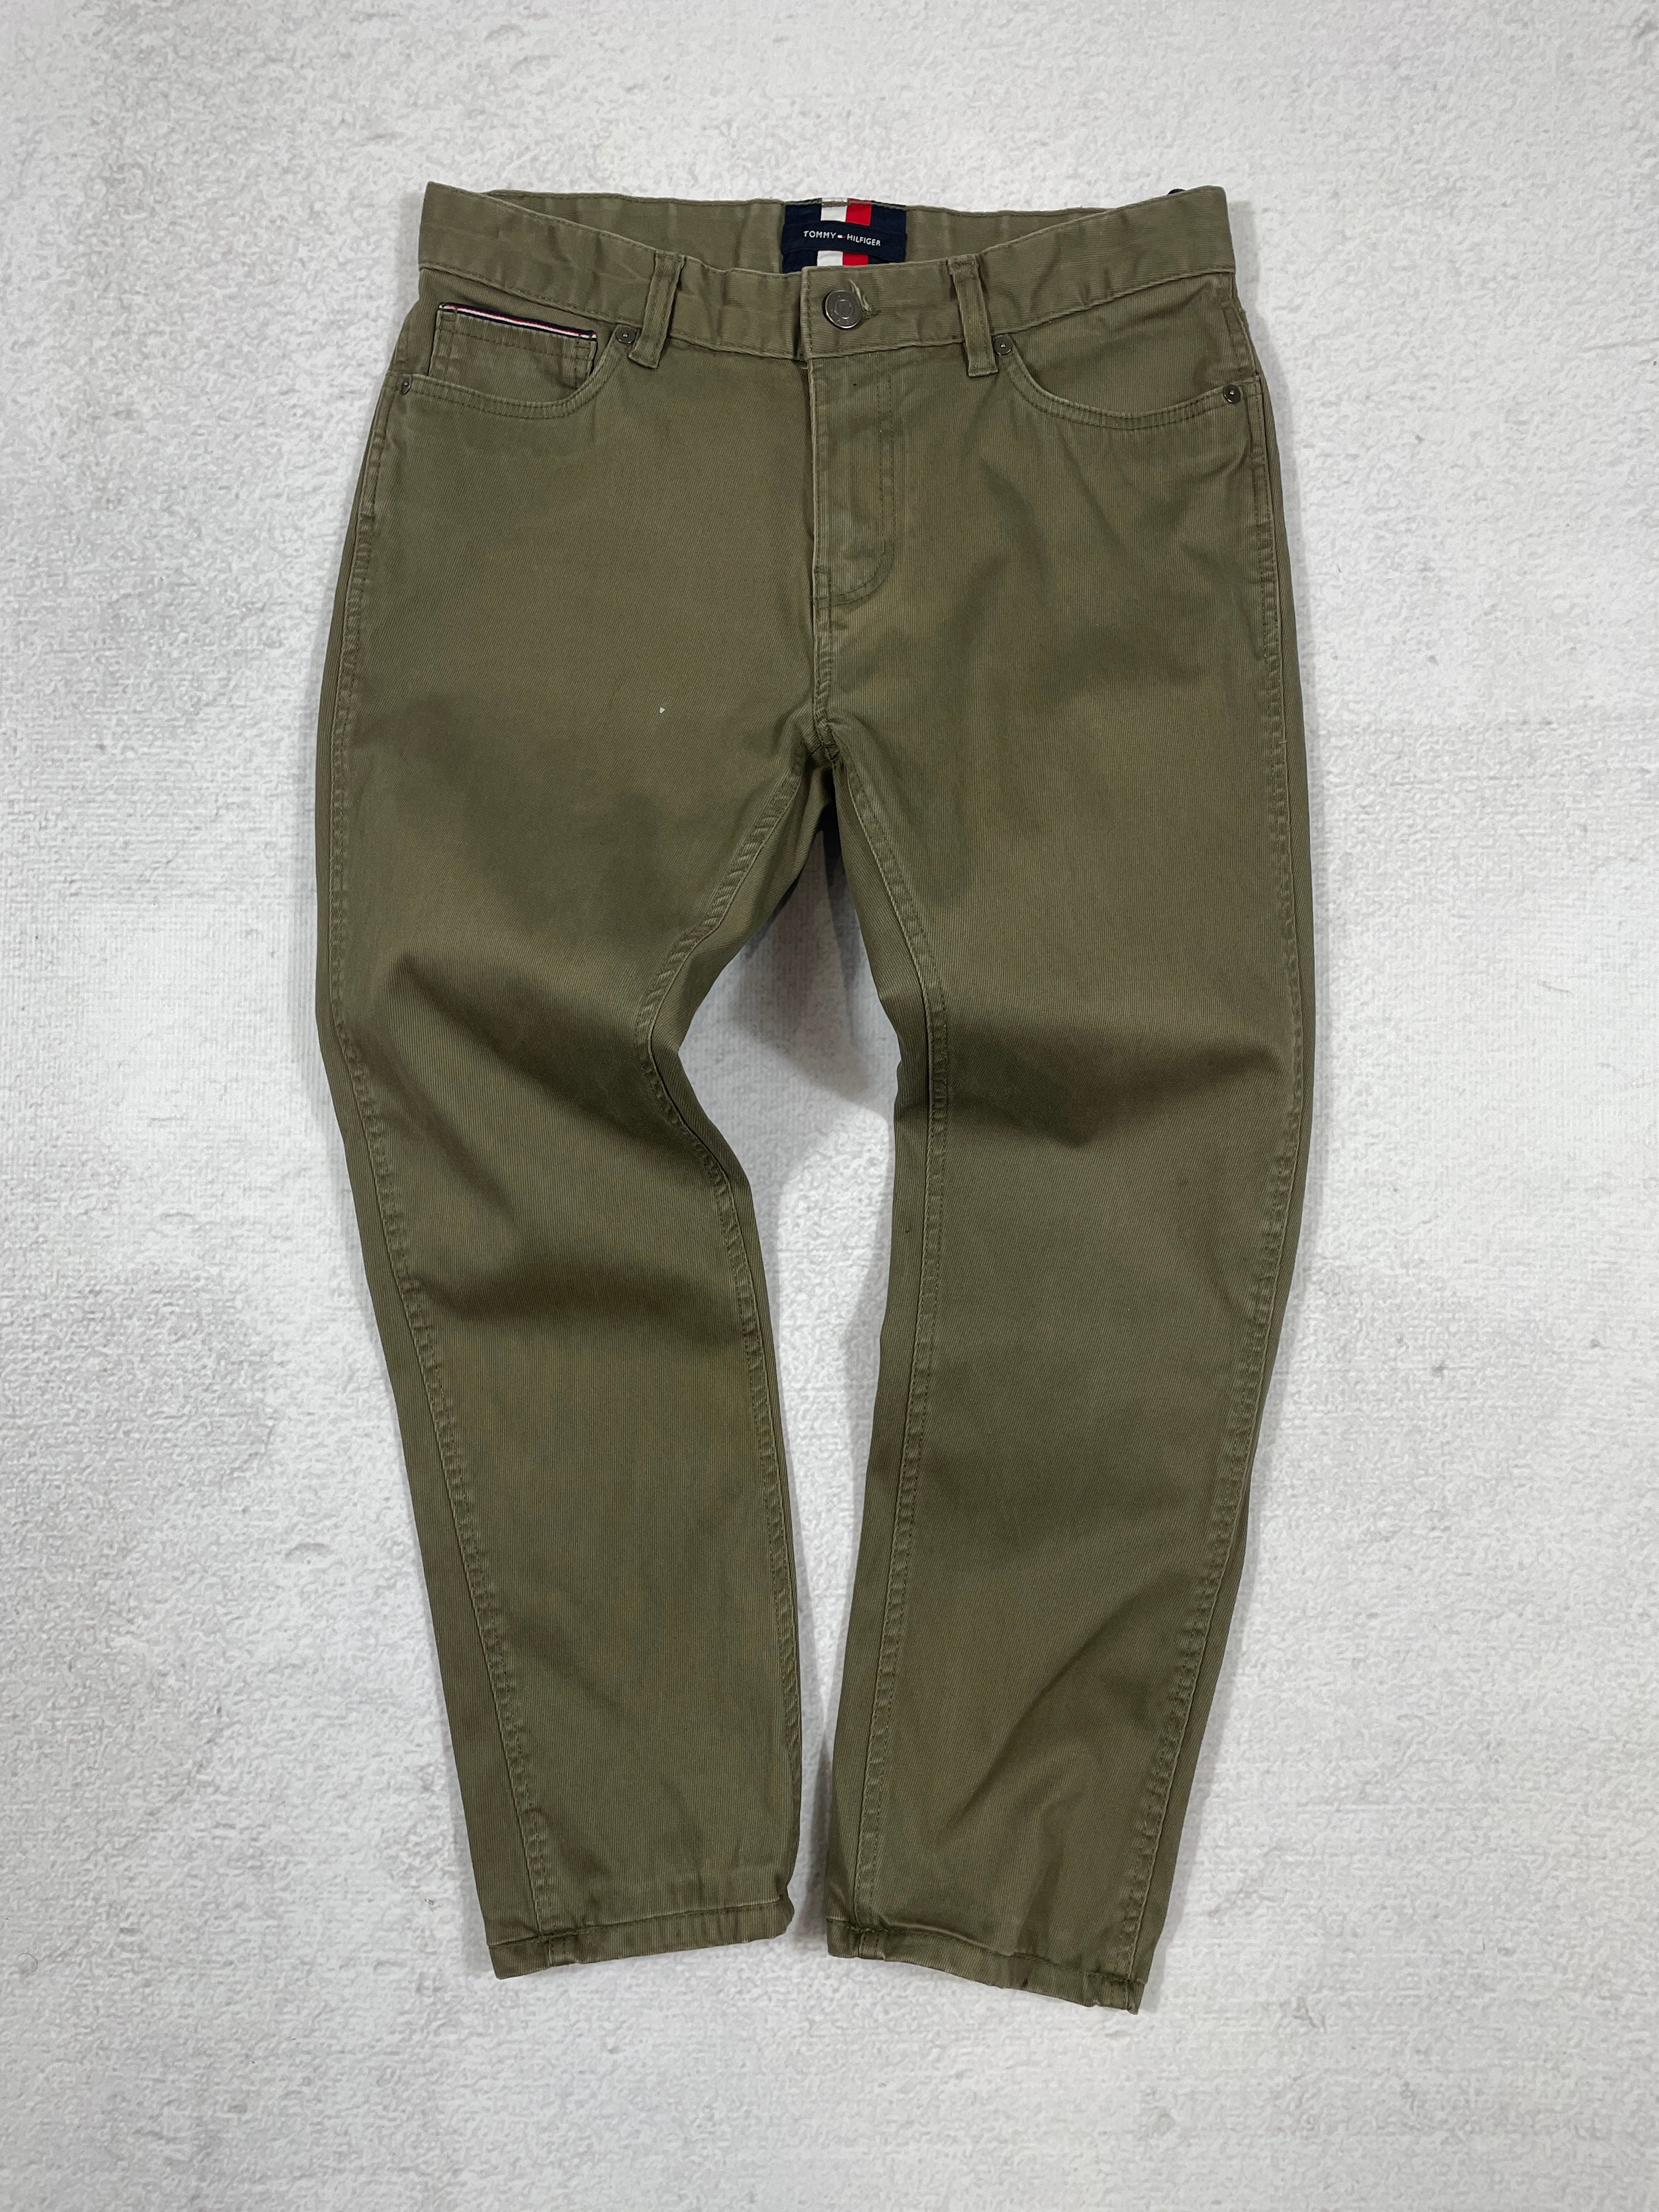 Vintage Tommy Hilfiger Khaki Jeans - Men's 30Wx32L